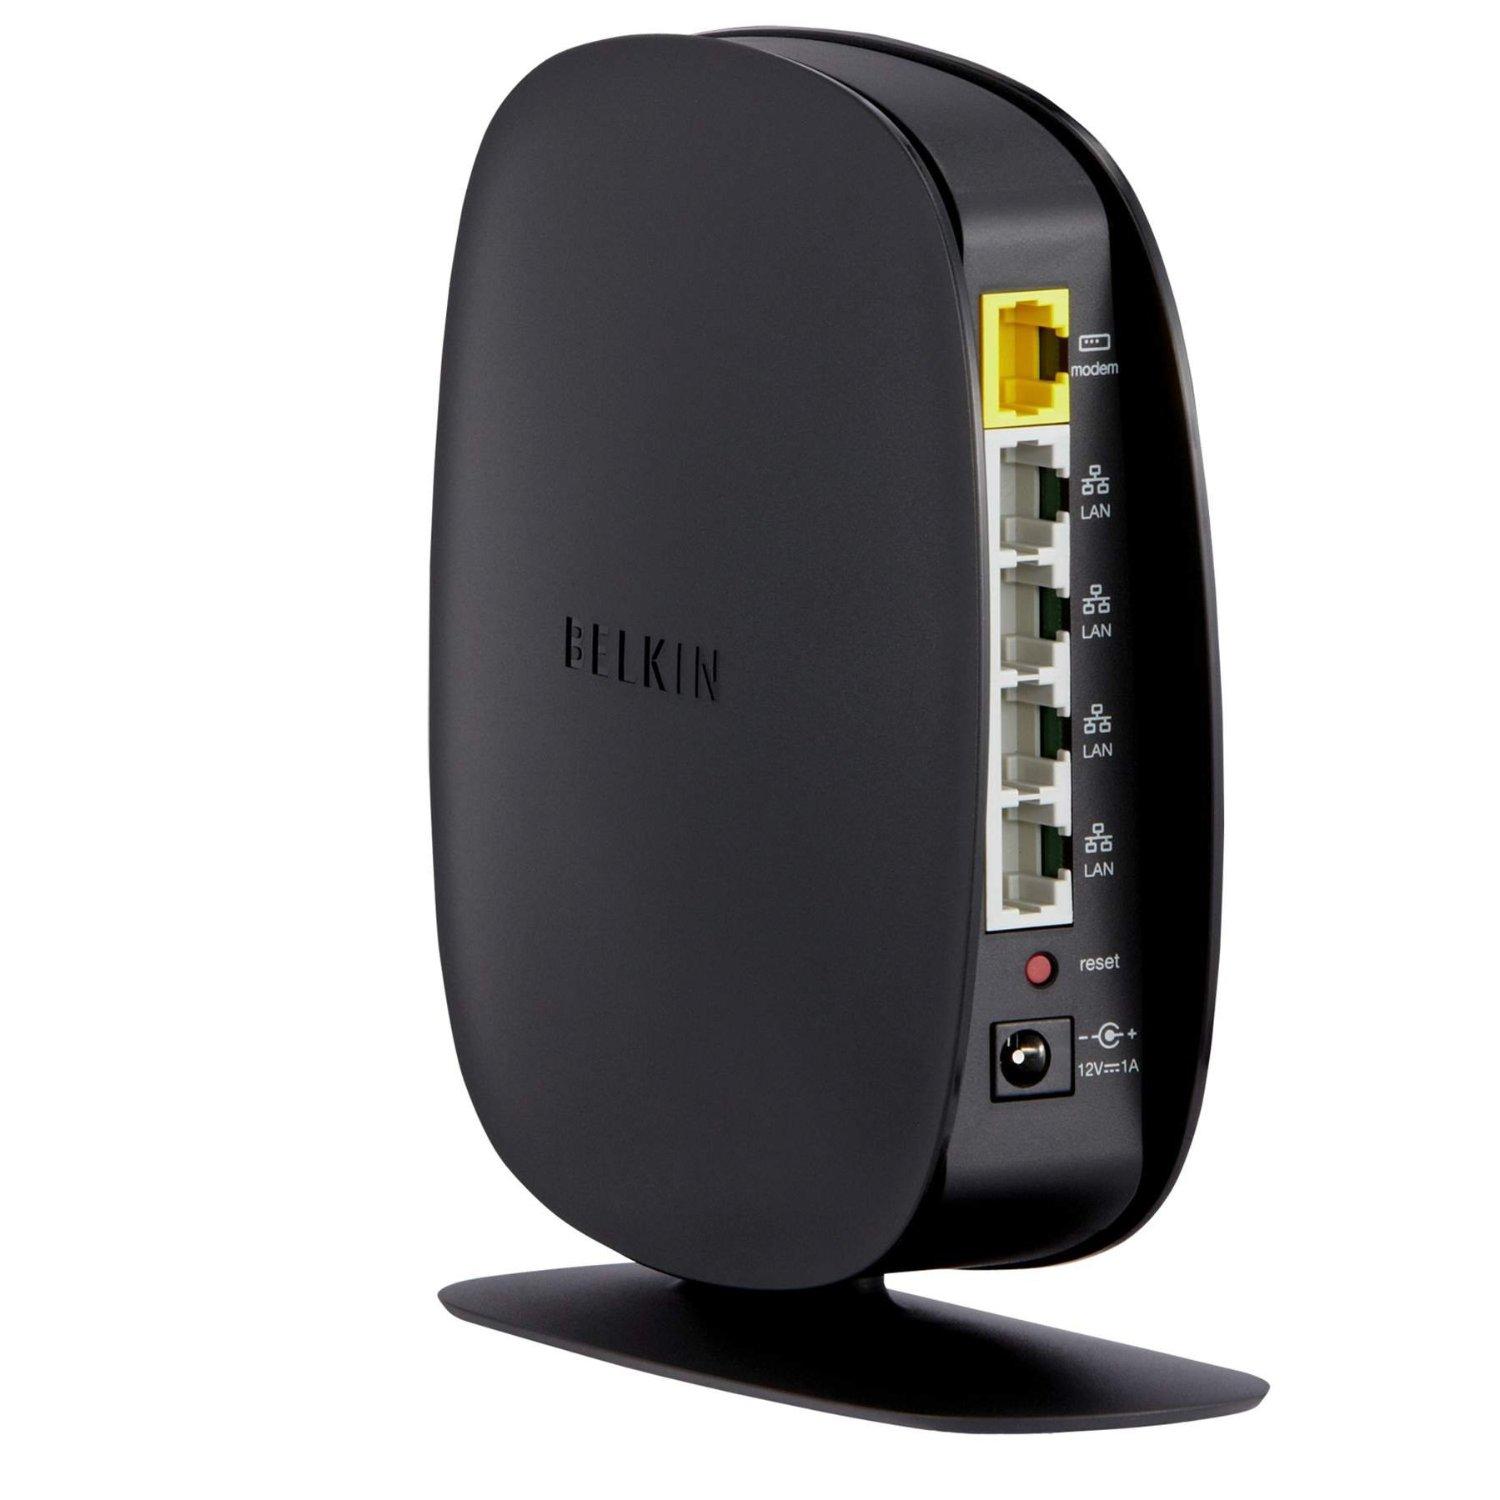 belkin wireless router ce0560 manual